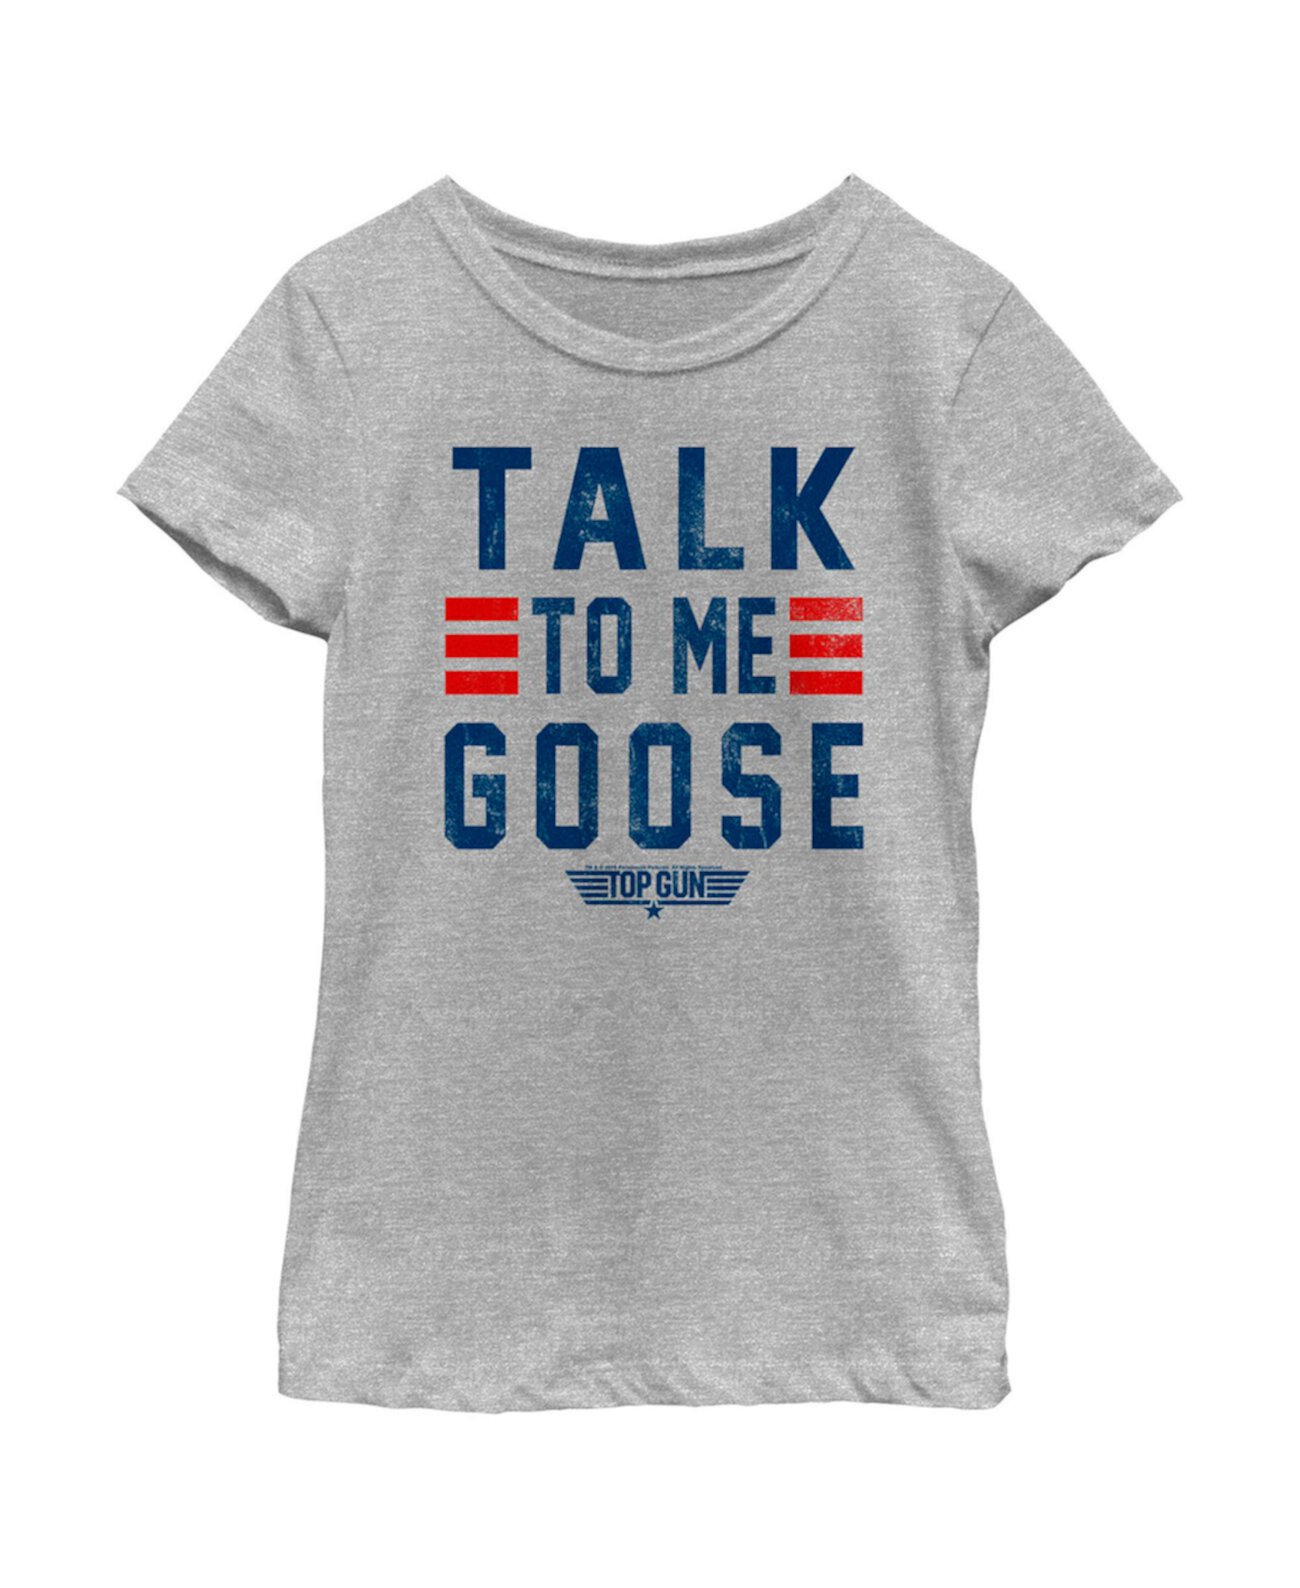 Детская футболка Top Gun для девочек Talk to Me Goose Quote Paramount